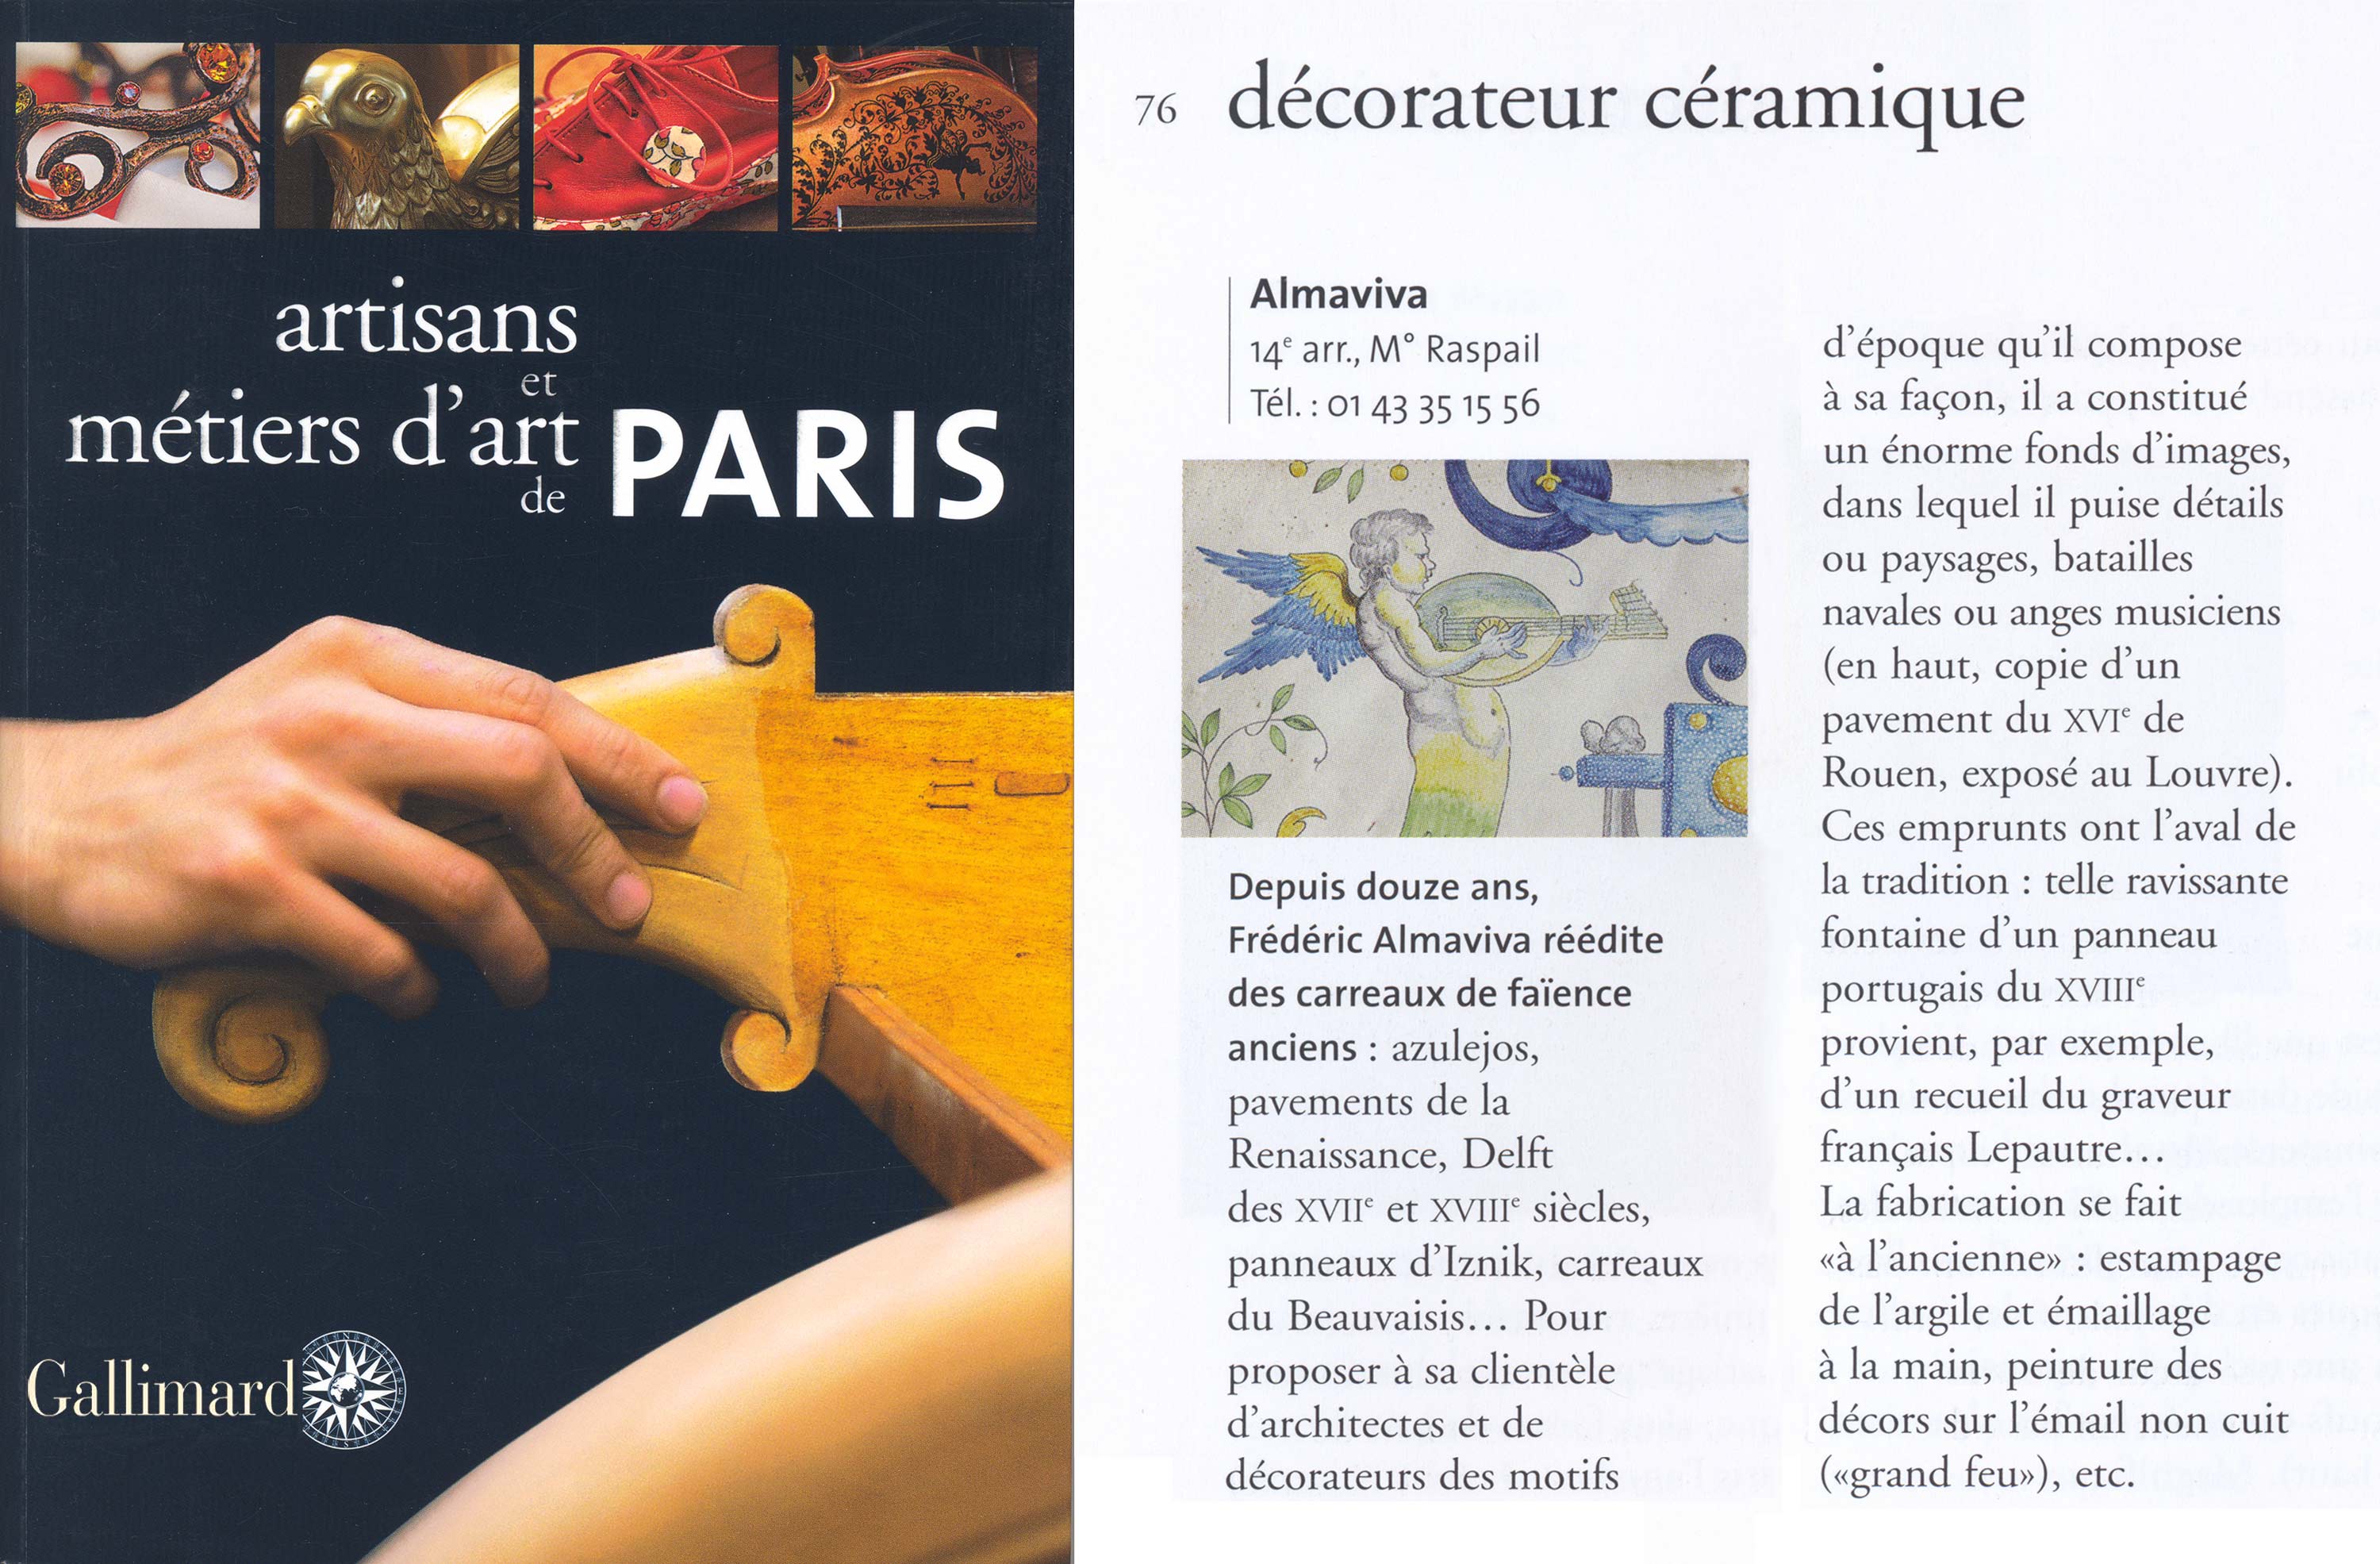 Le Guide Gallimard sur les artisans et métiers d'art de Paris a consacré un article à l'Atelier Almaviva, décorateur céramique